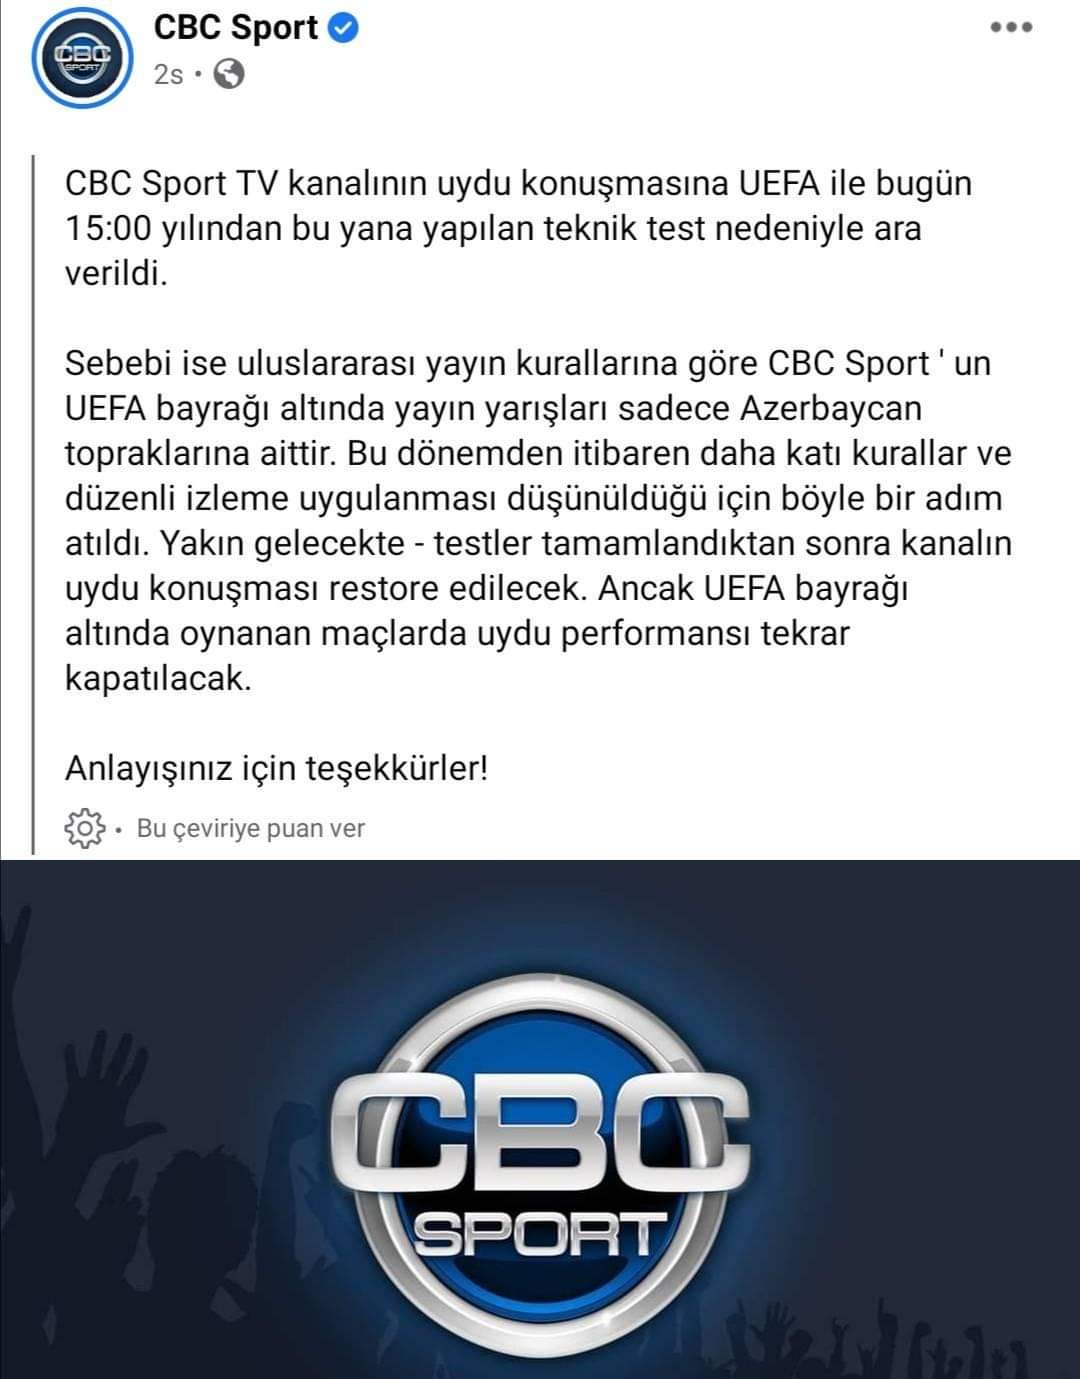 tv platformlari on twitter cbc sports azerbaycan spor kanali bu sezonda sampiyonlar ligi ve uefa avrupa ligi ni sifresiz yayinlayacak haftanin programinda besiktas borussia dortmund ve frankfurt fenerbahce maclari yer aliyor